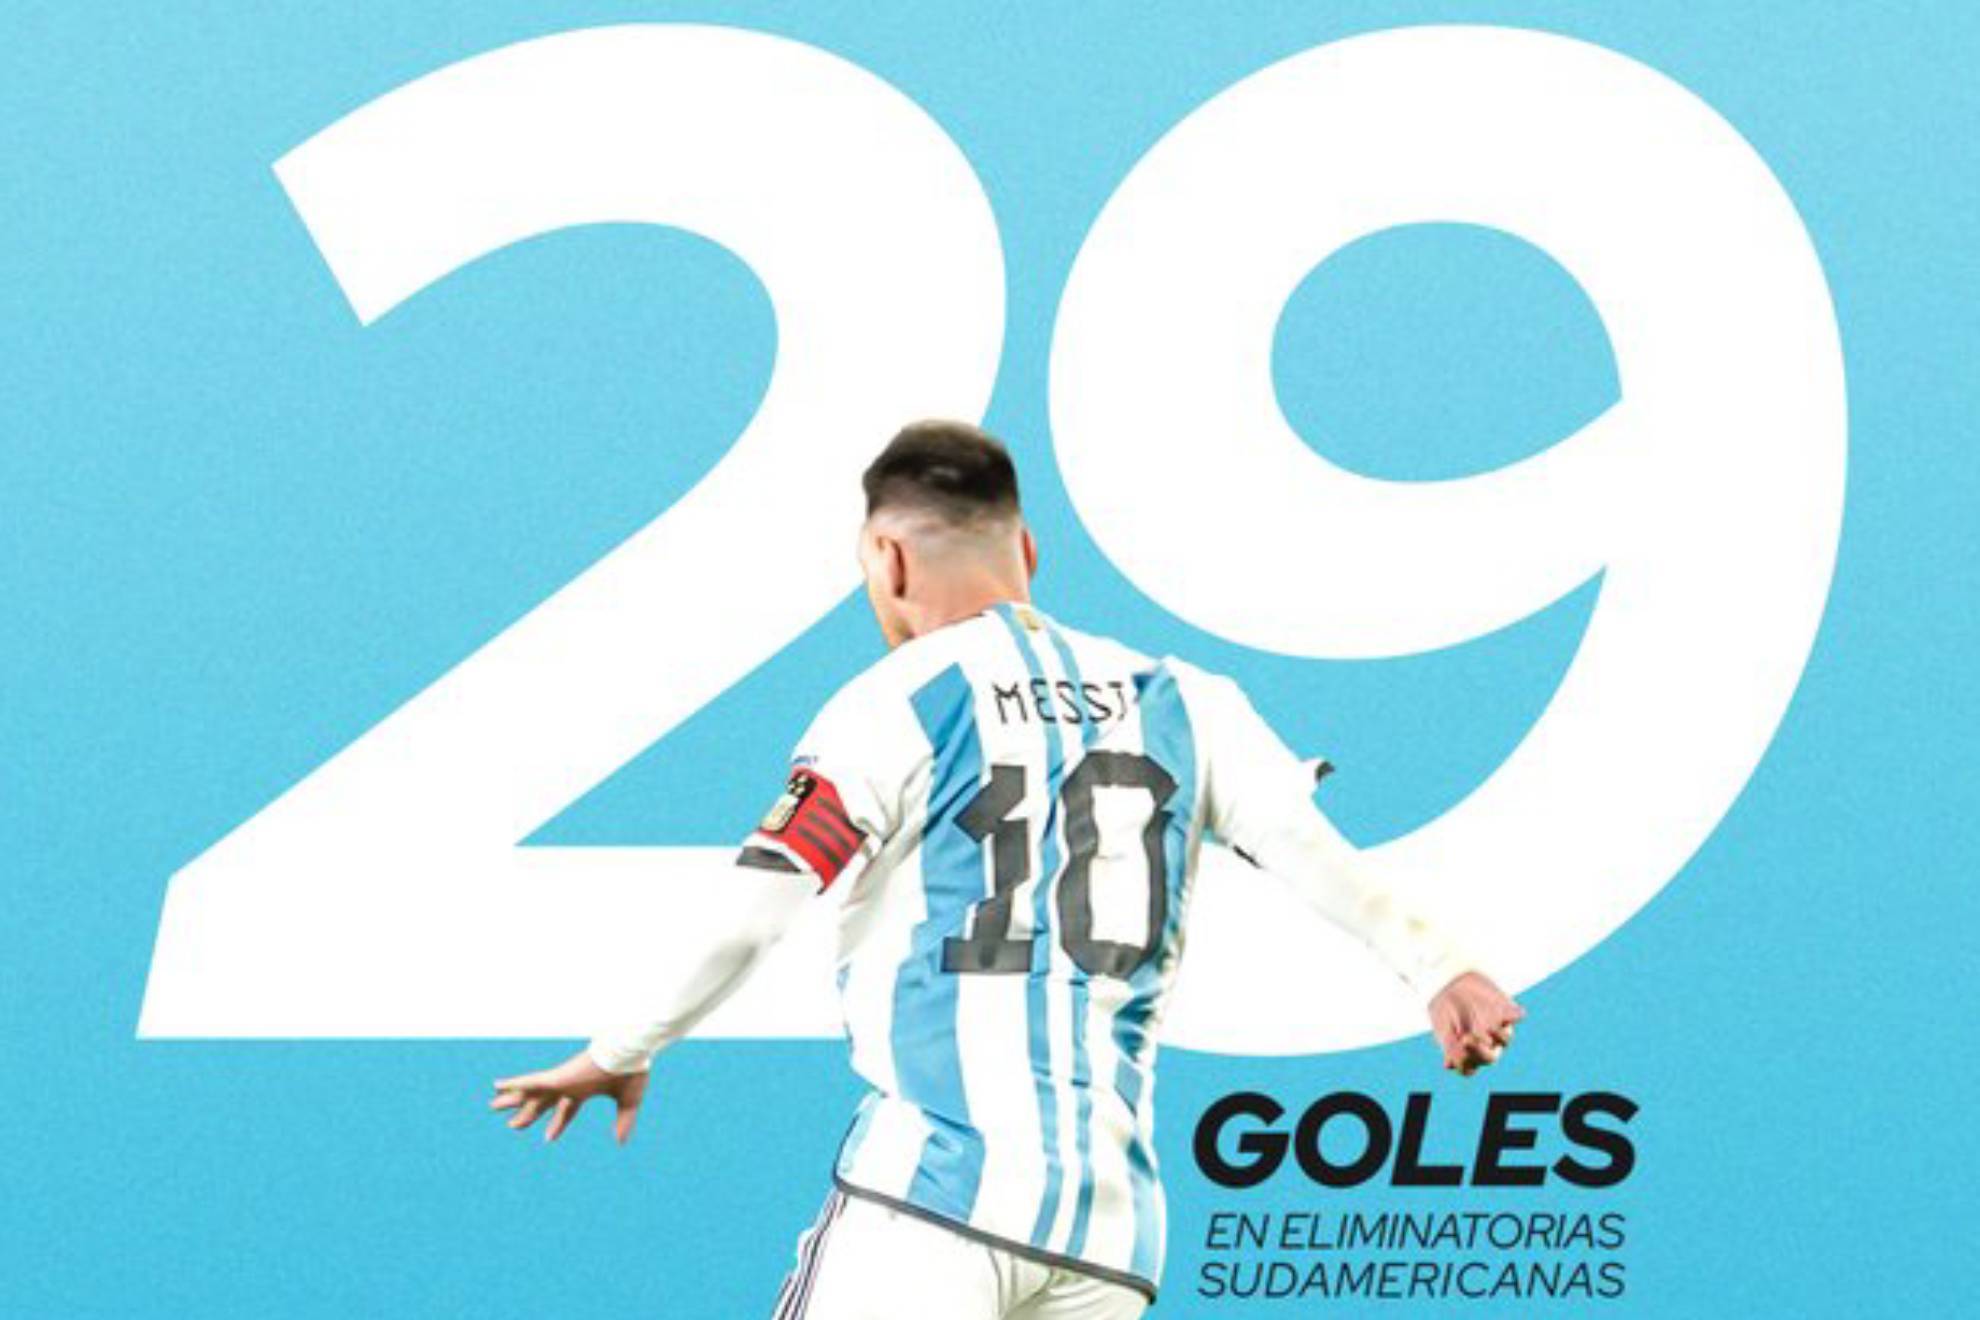 Messi iguala un r�cord goleador de Luis Su�rez en las eliminatorias sudamericanas: "Es un placer"